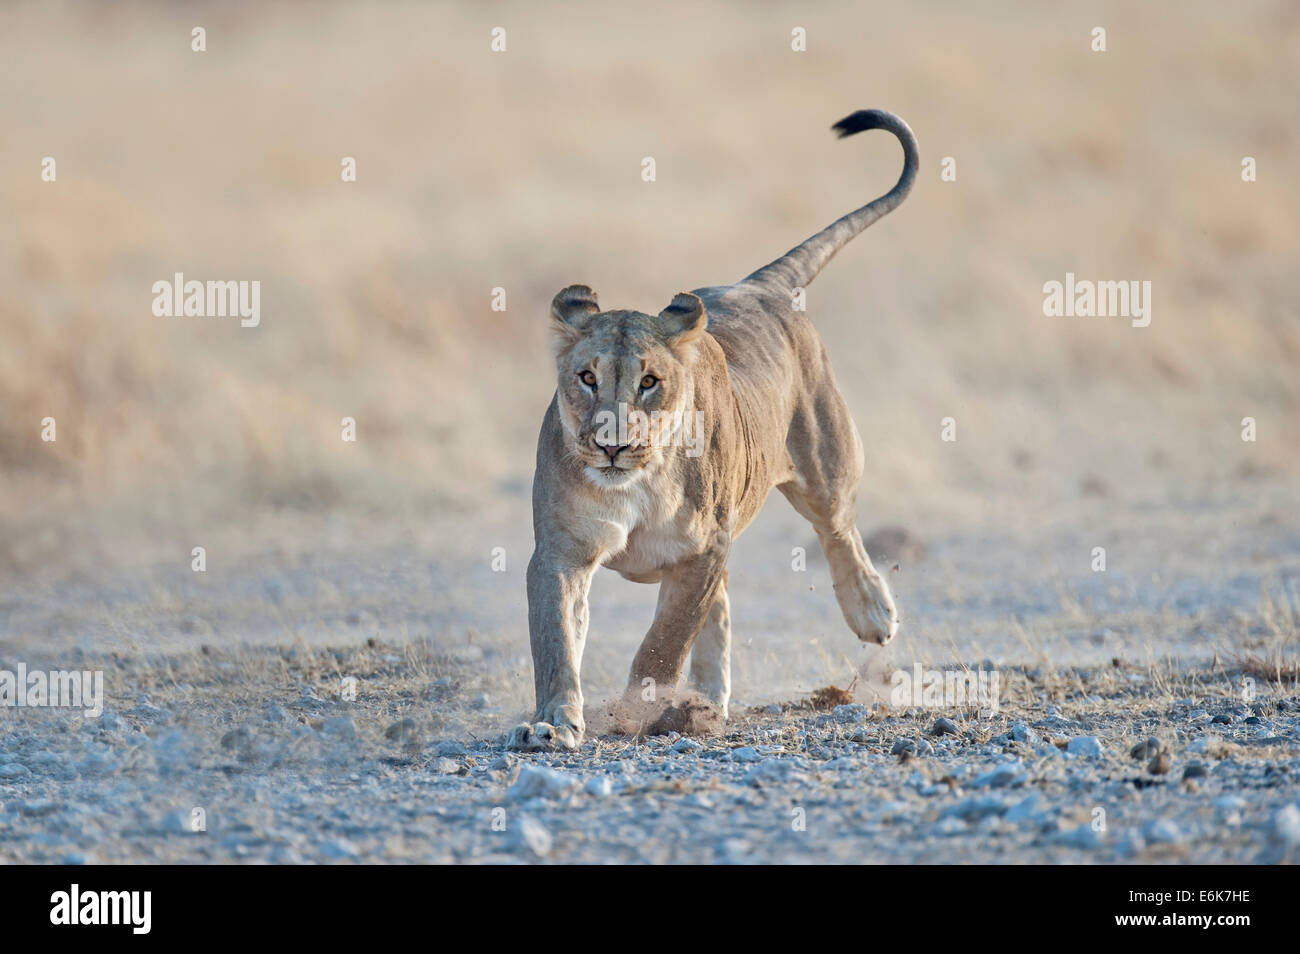 León (Panthera leo), adulto ejecutando en terreno rocoso, el Parque Nacional de Etosha, Namibia Foto de stock